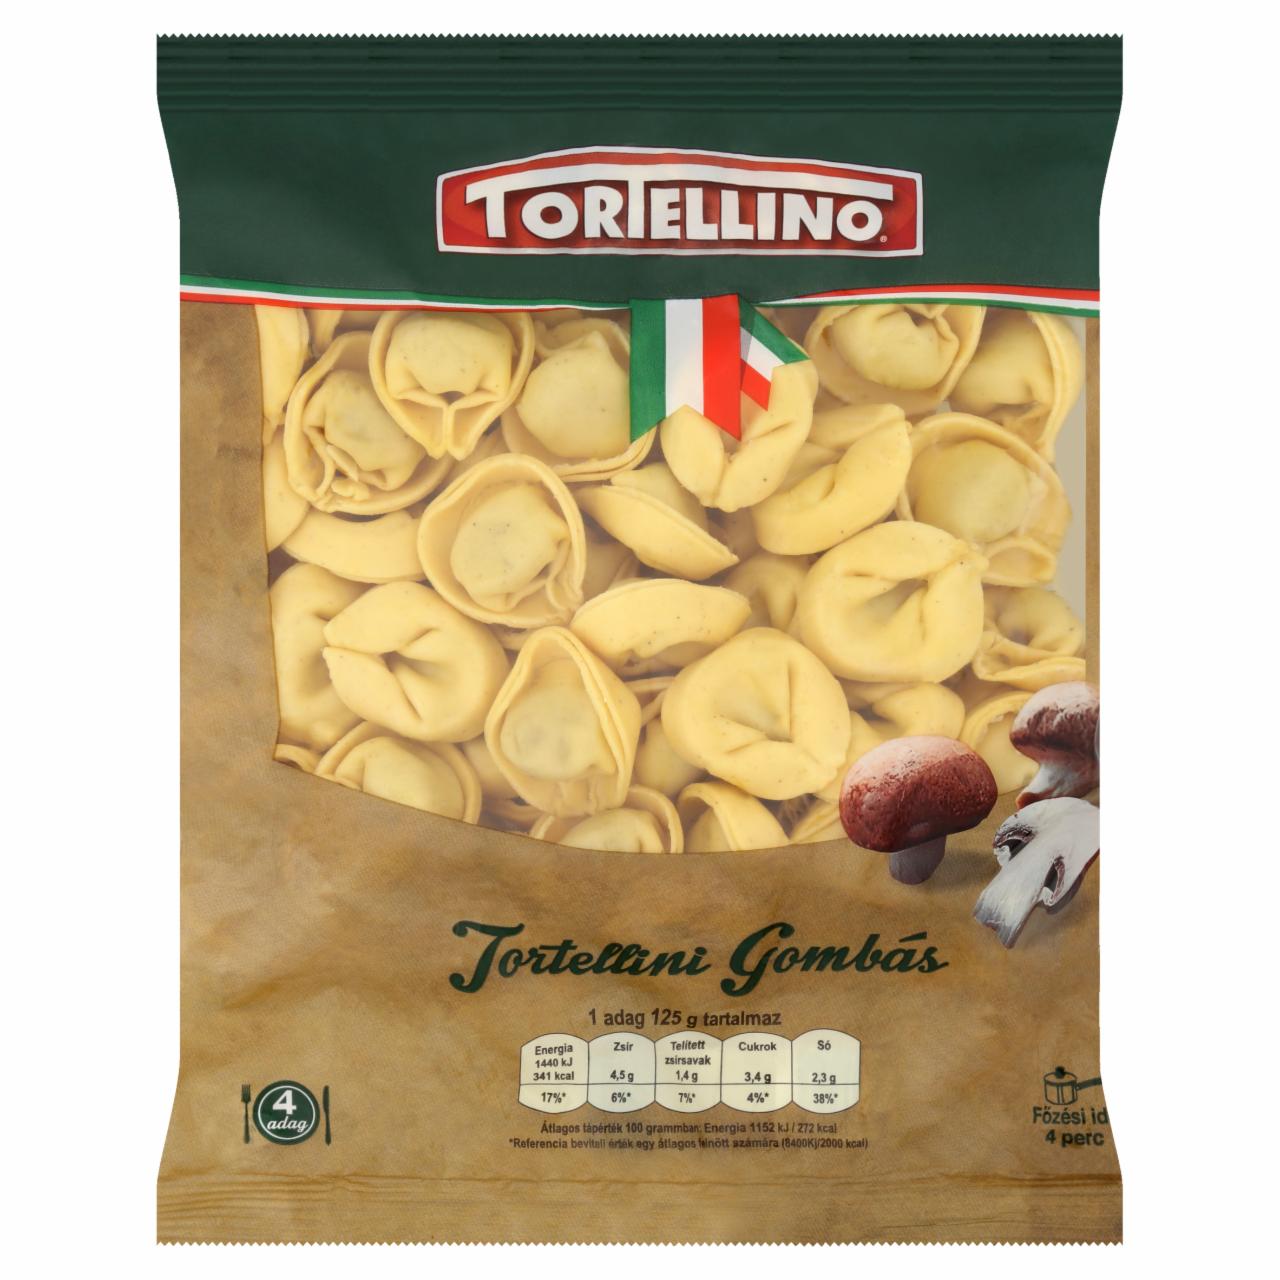 Képek - Tortellino Tortellini gombás friss tészta 500 g